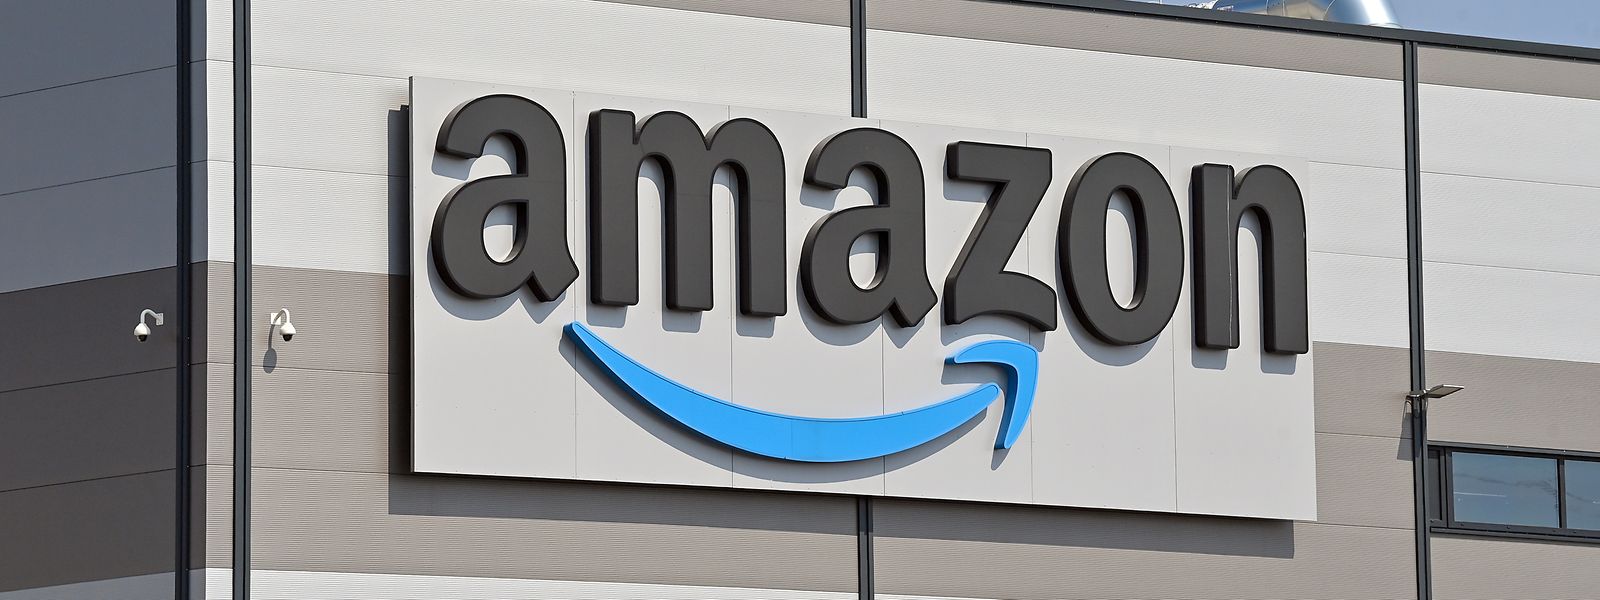 Heute fiel das Urteil zu den umstrittenen Steuervergünstigungen für Amazon in Luxemburg. 